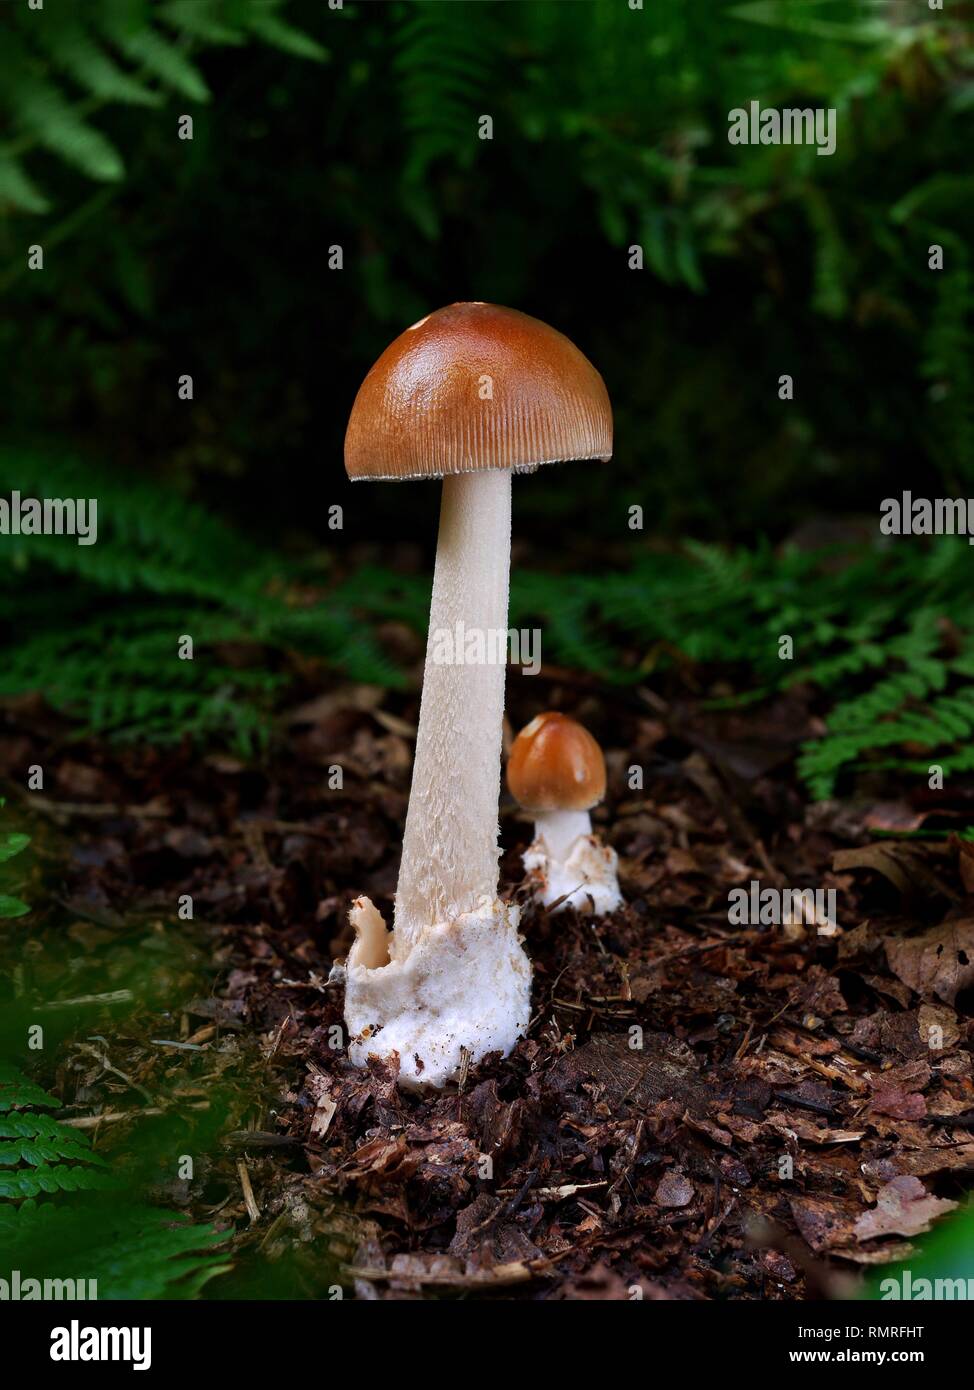 La belle Grisette fauve, Amanita fulva champignon comestible est une espèce appartenant à l'autre groupe de champignons dangereux y compris la mort. Banque D'Images